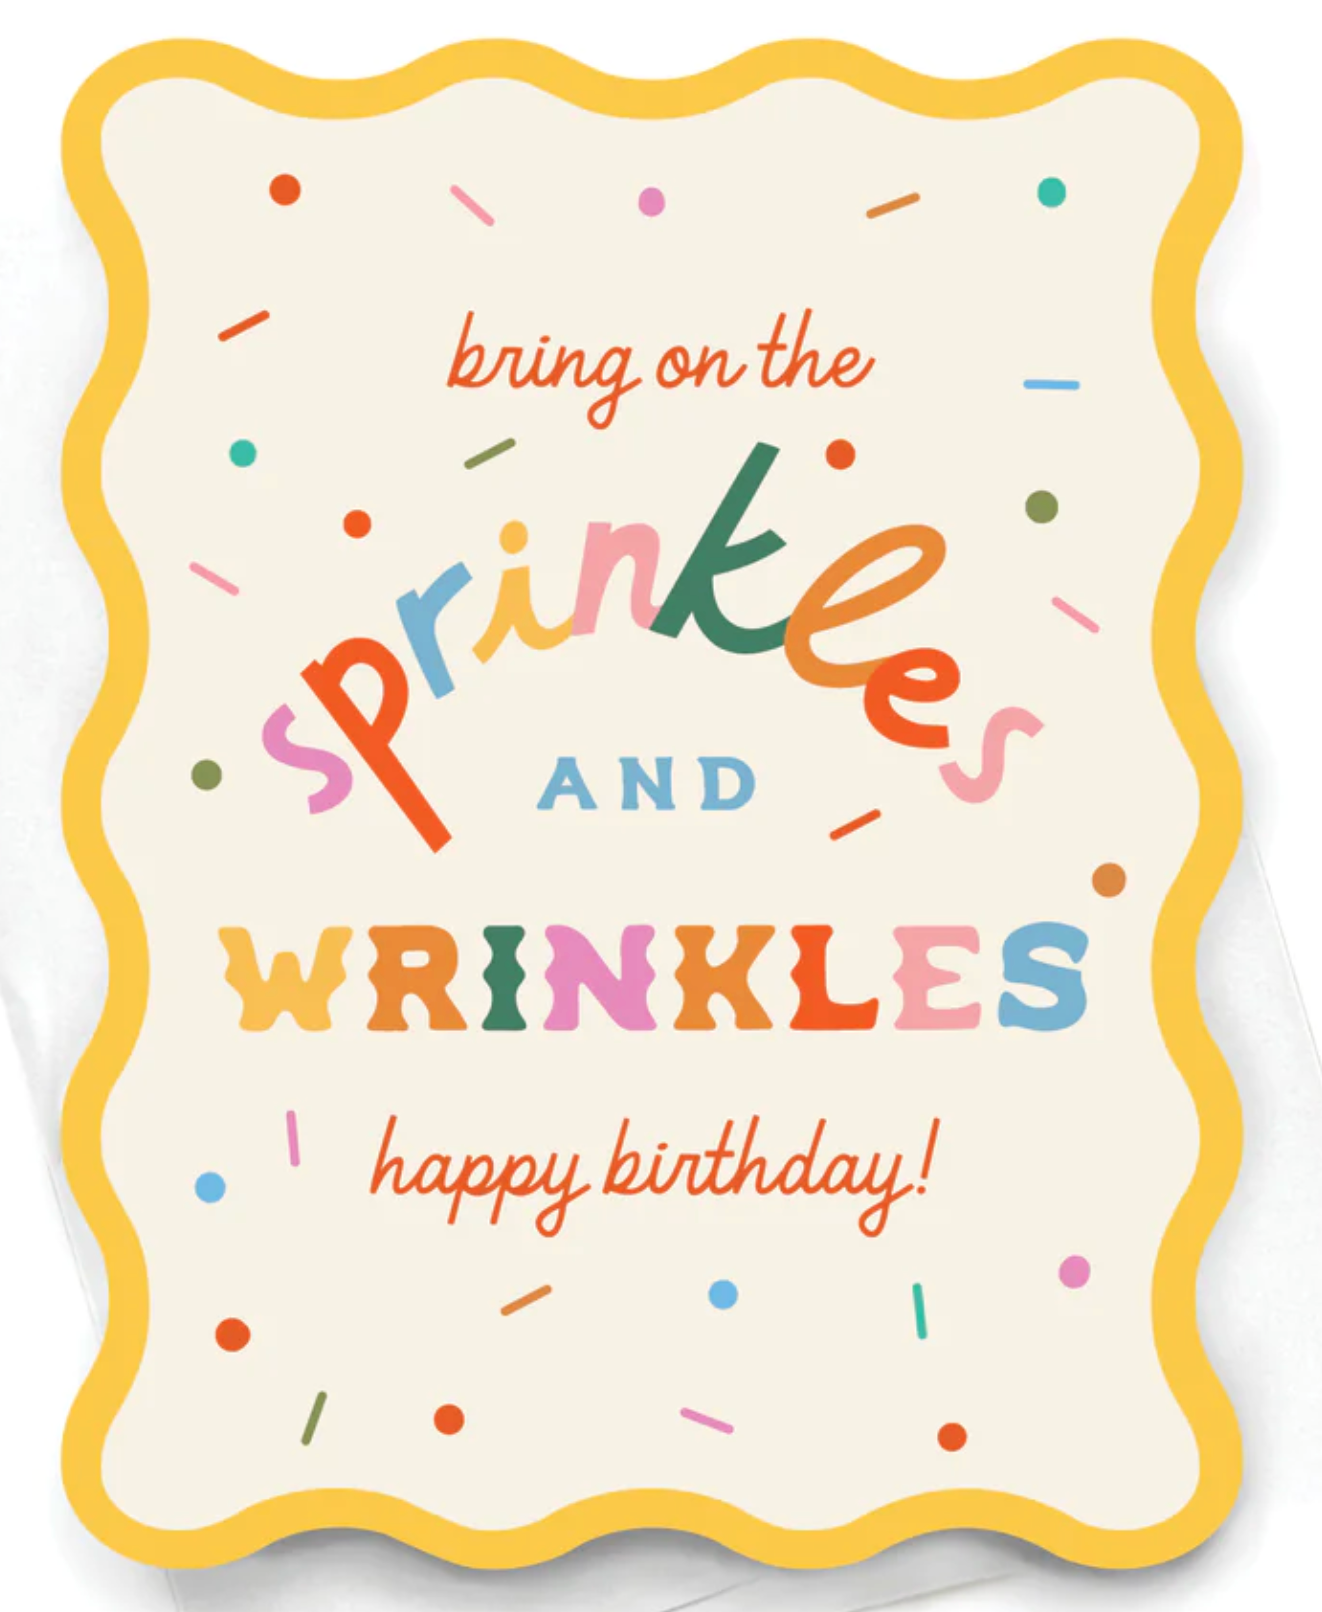 Sprinkles and Wrinkles Greeting Card